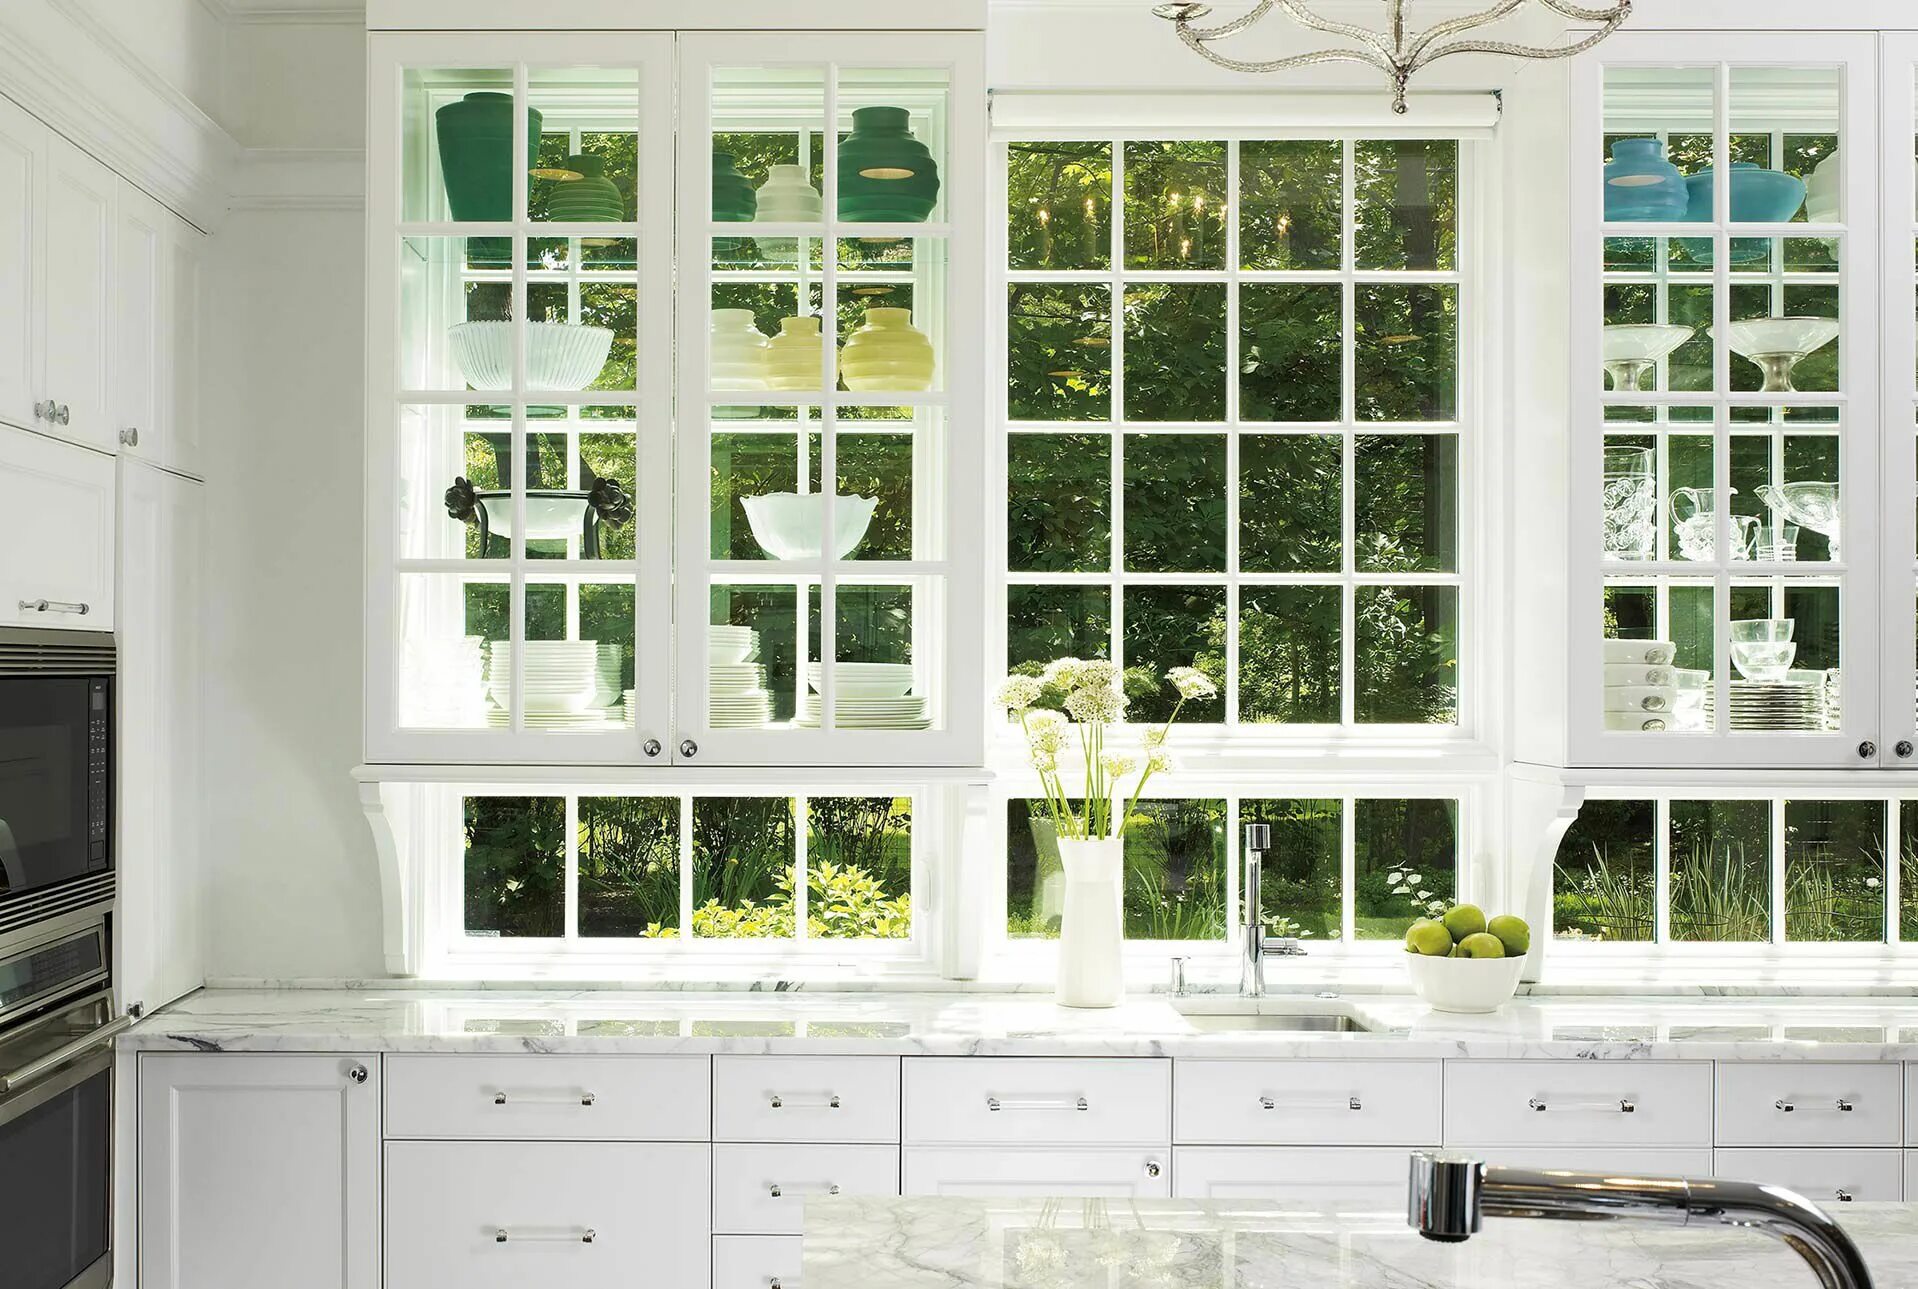 Установка пластикового окна кухни. Пластиковое окно на кухню. Окно со шпросами на кухне. Окно на кухне с раскладкой. Красивый декор кухонного окна.